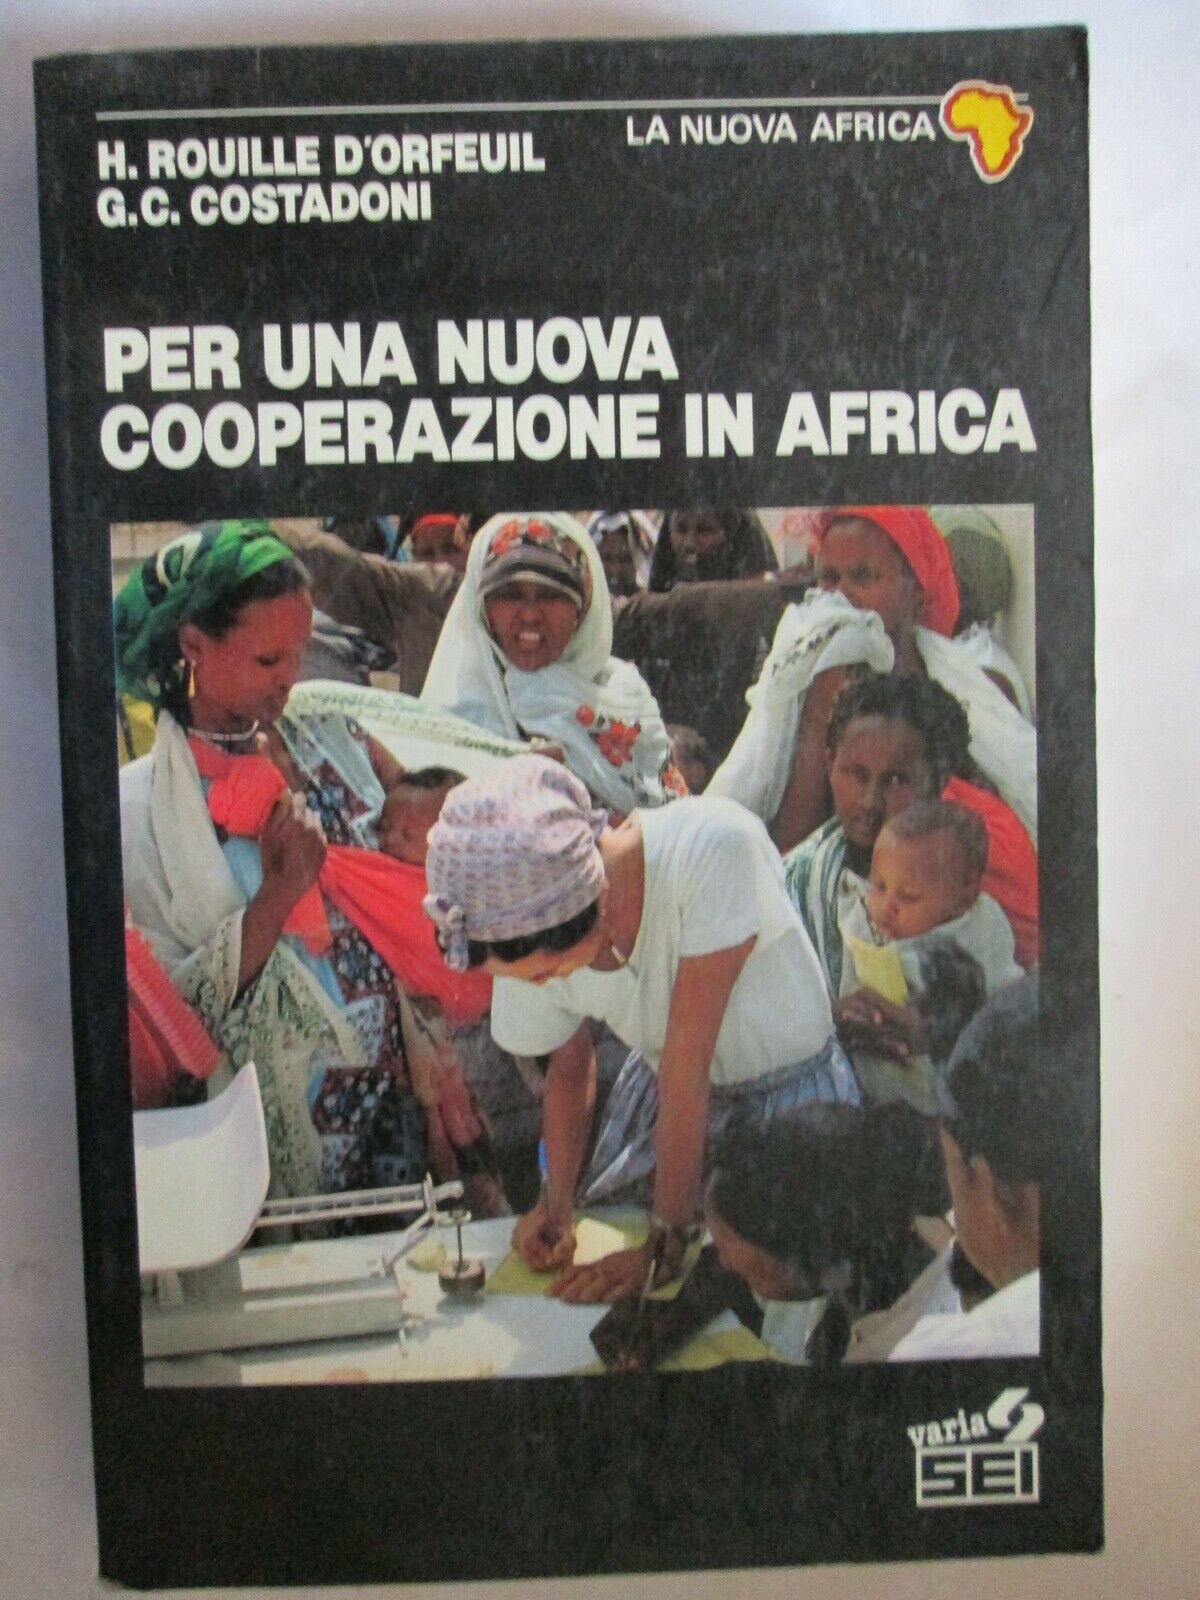 Per una nuova cooperazione in Africa